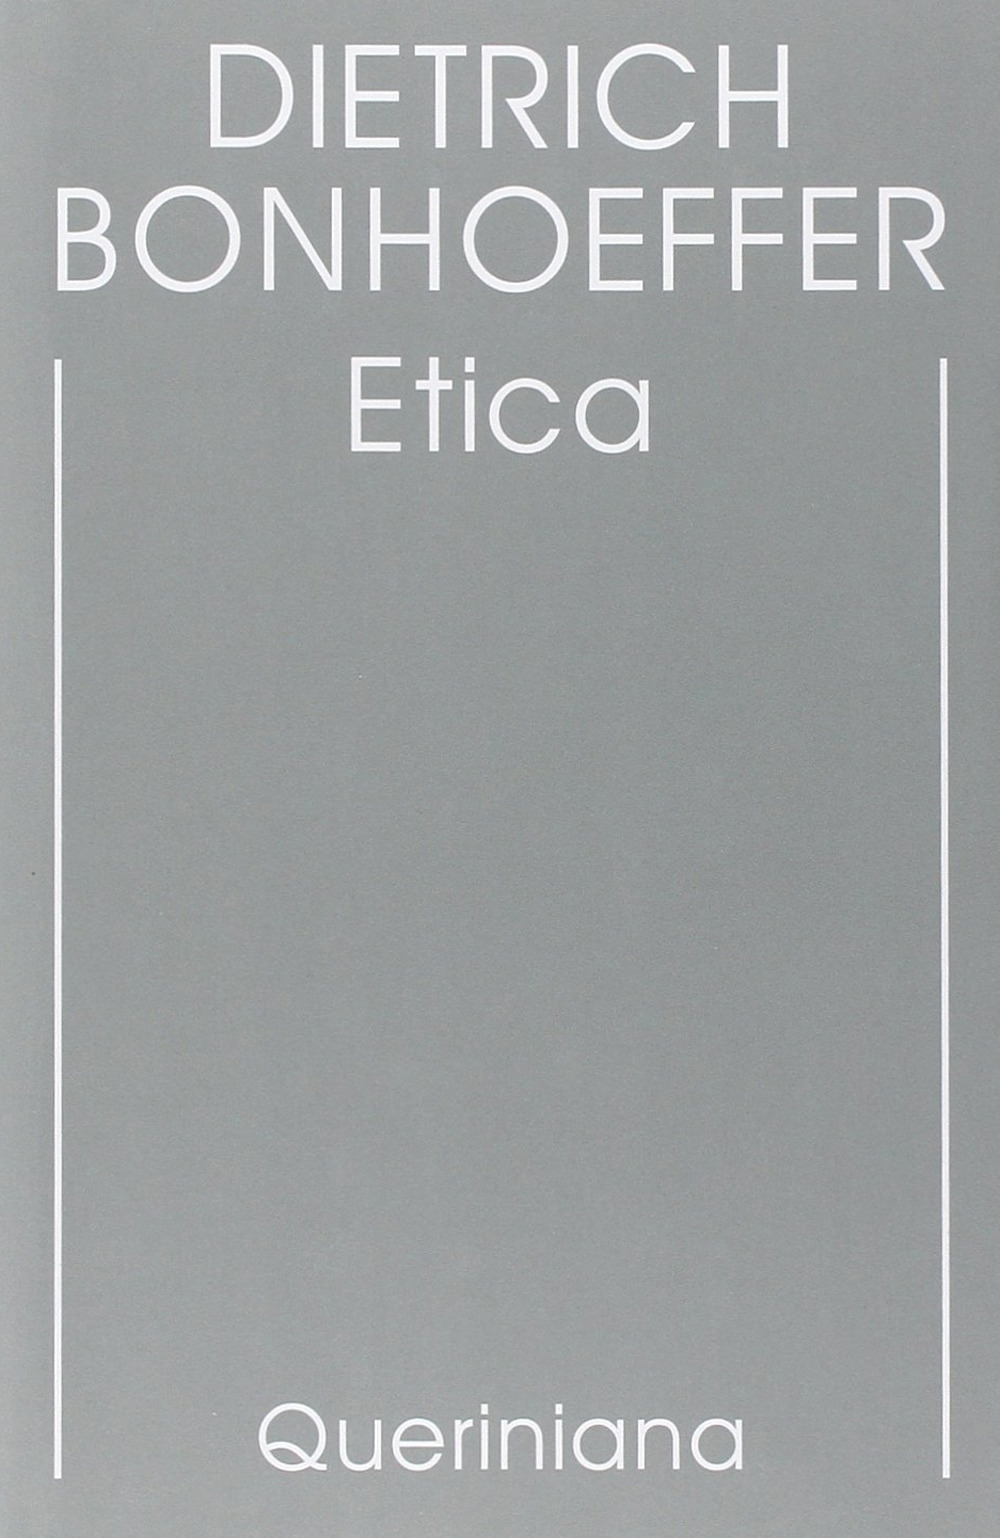 Edizione critica delle opere di D. Bonhoeffer. Ediz. critica. Vol. 6: Etica